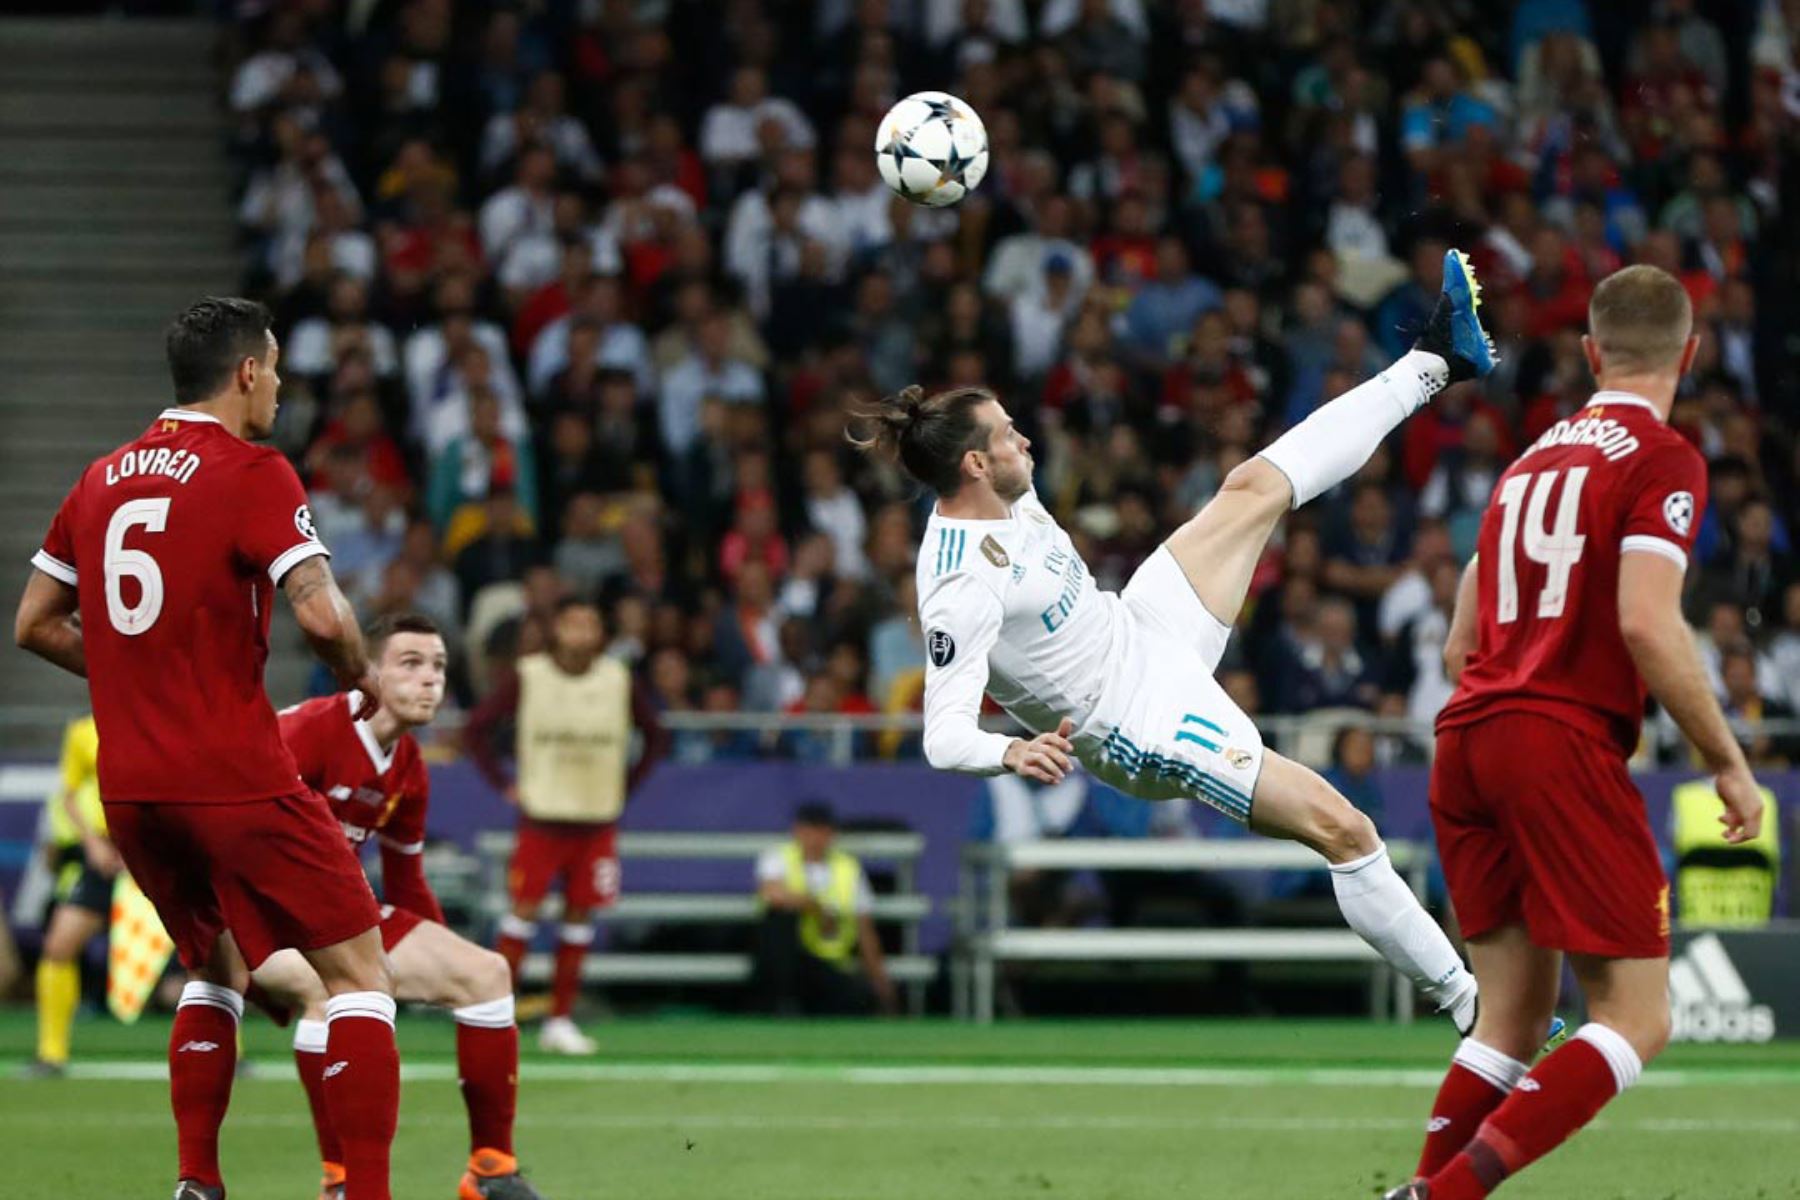 El delantero gaélico del Real Madrid Gareth Bale anota el segundo gol de su equipo durante el partido de fútbol final de la UEFA Champions League entre el Liverpool y el Real Madrid en el Estadio Olímpico de Kiev. Foto: AFP